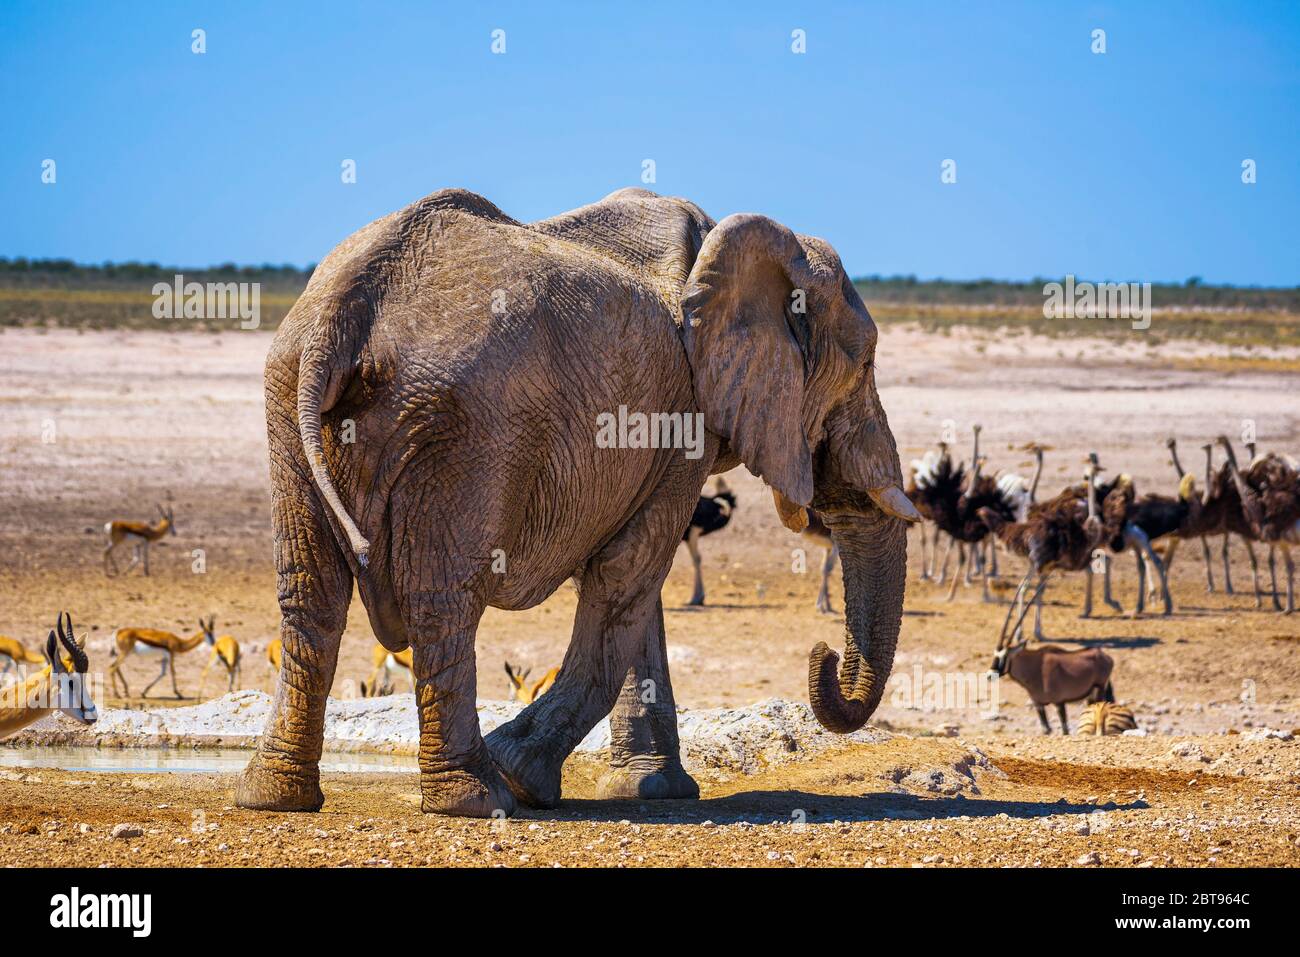 Elephant surrounded by wildlife in Etosha National Park, Namibia Stock Photo